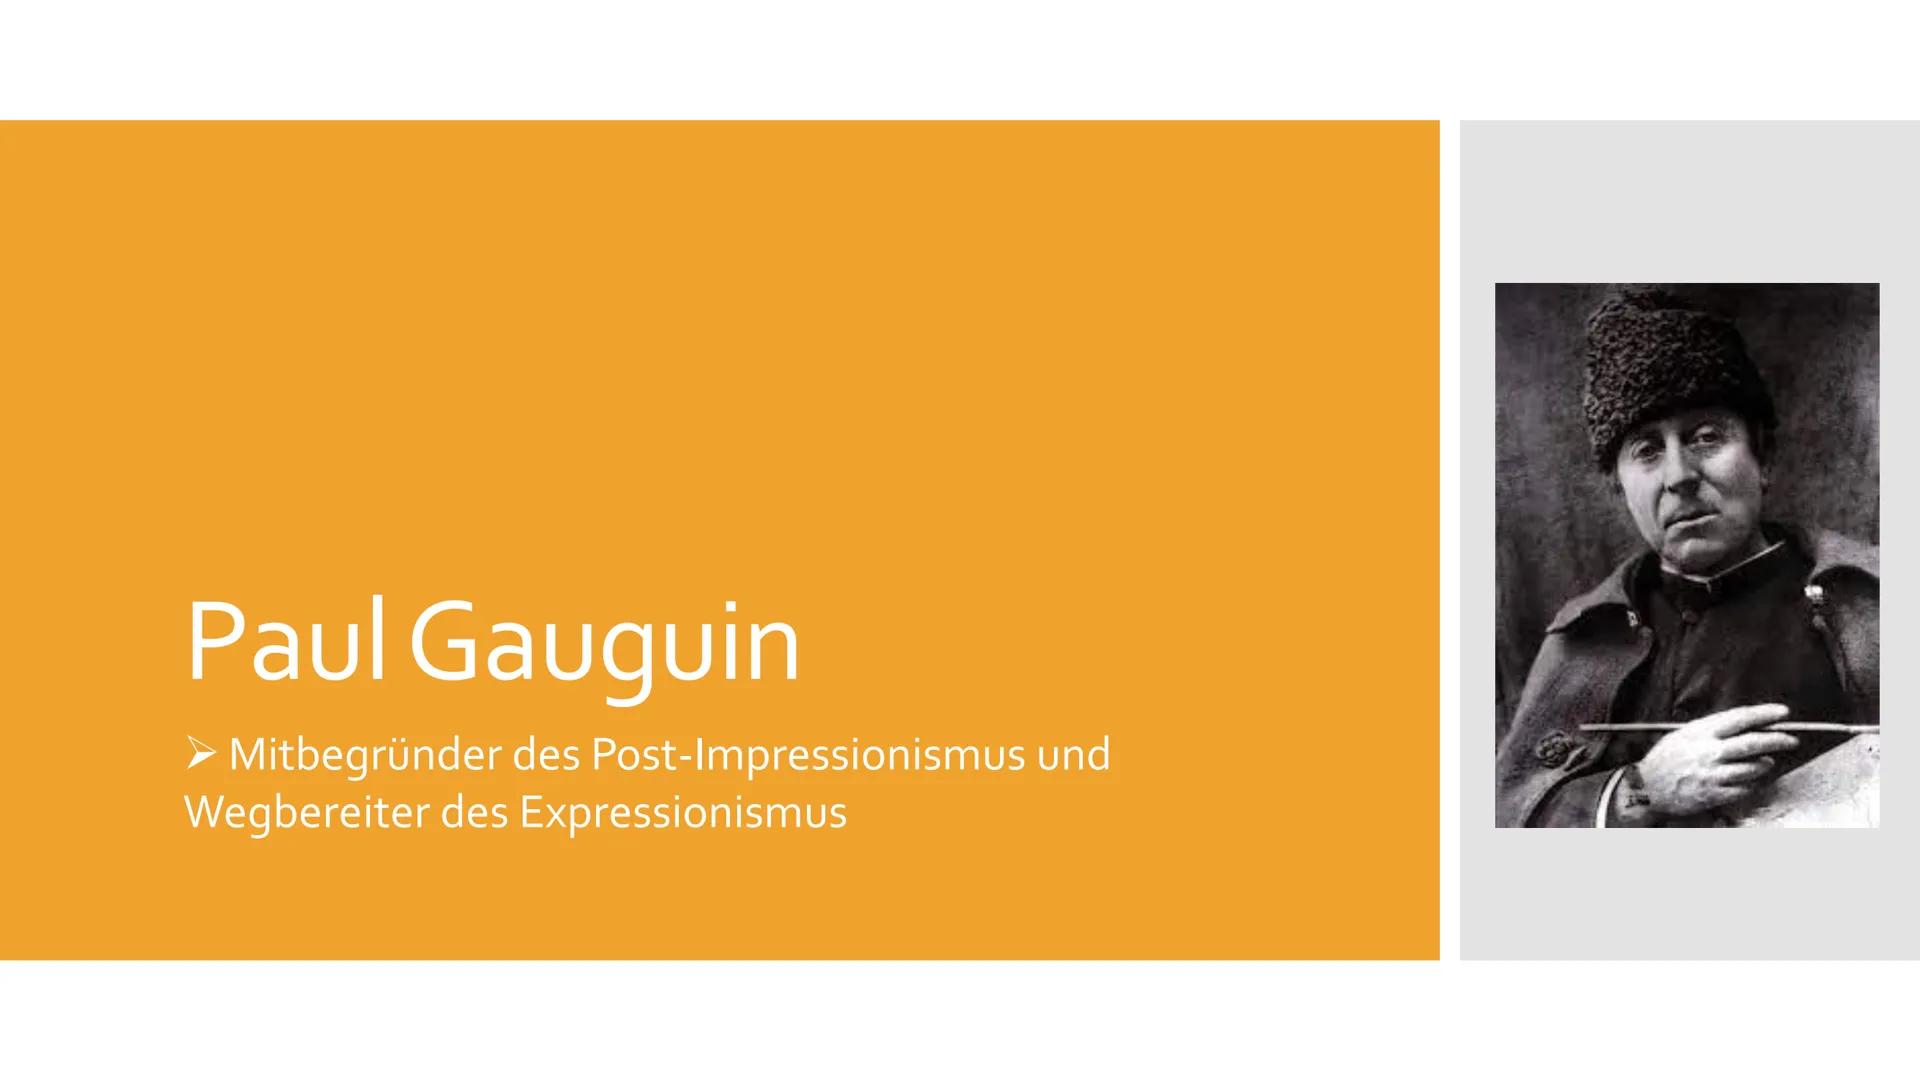 Paul Gauguin
➤ Mitbegründer des Post-Impressionismus und
Wegbereiter des Expressionismus Gliederung
Paul Gauguin
2.
Tahiti
Bilder der Südsee